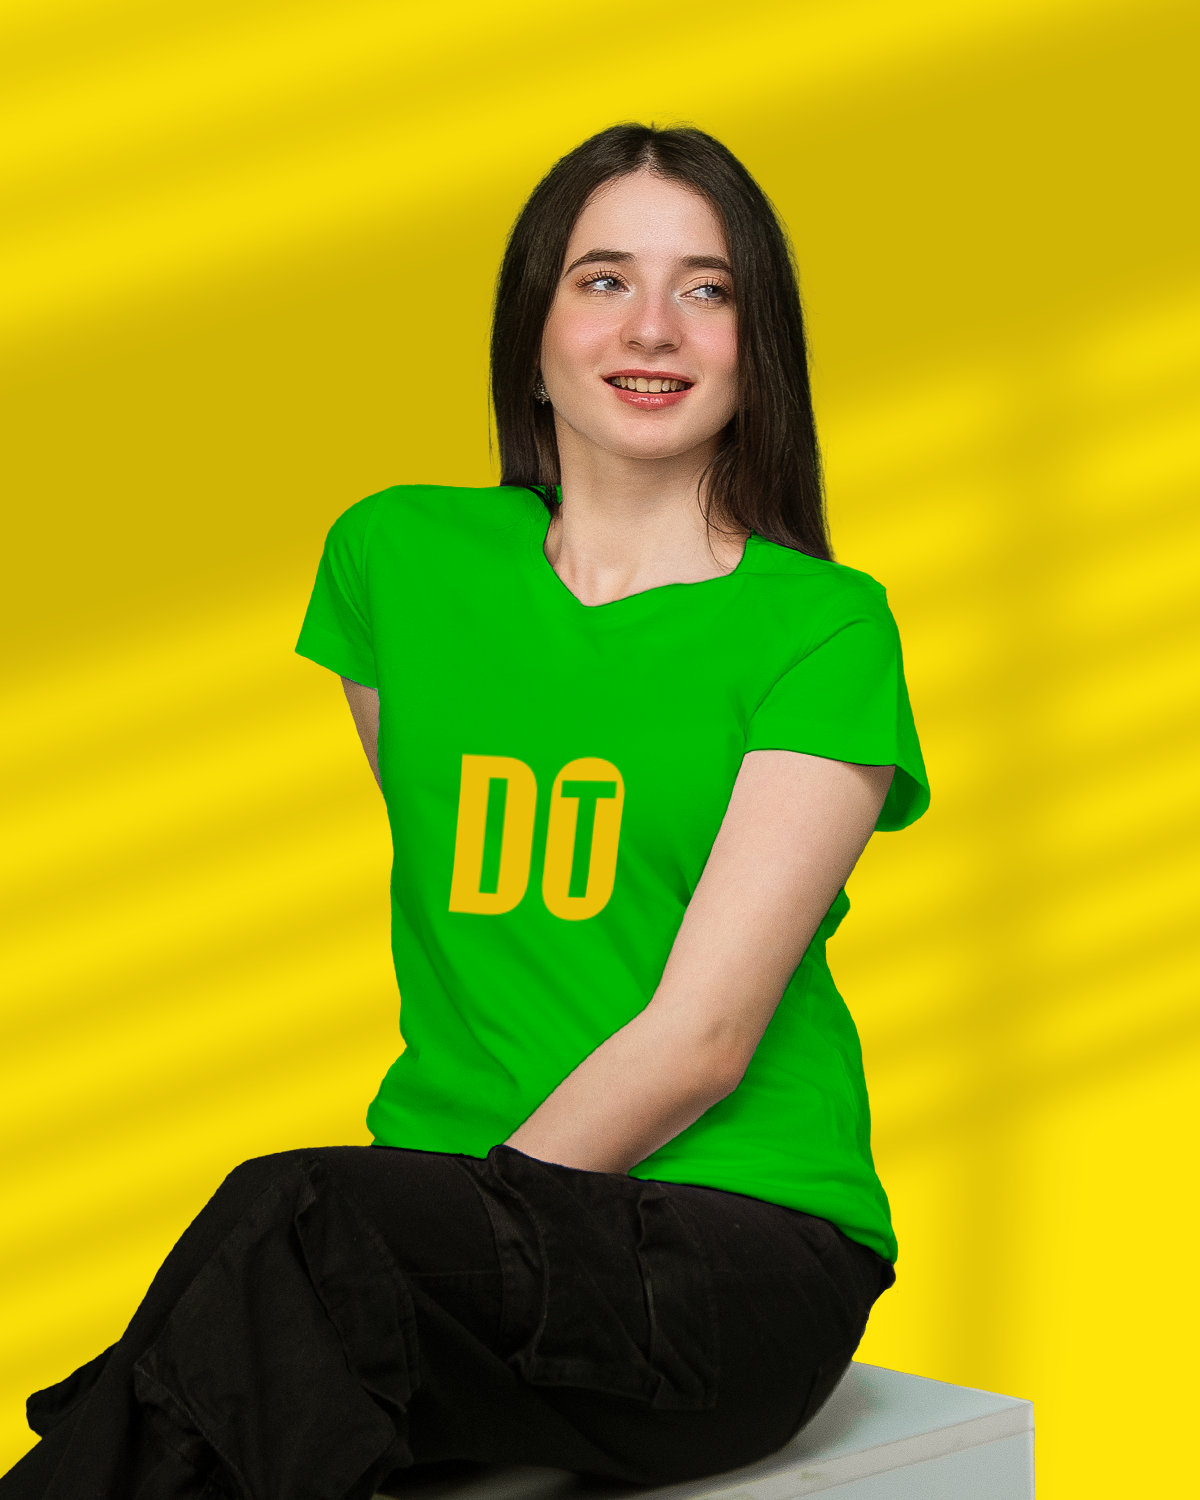 Women’s T-shirt (DO IT)